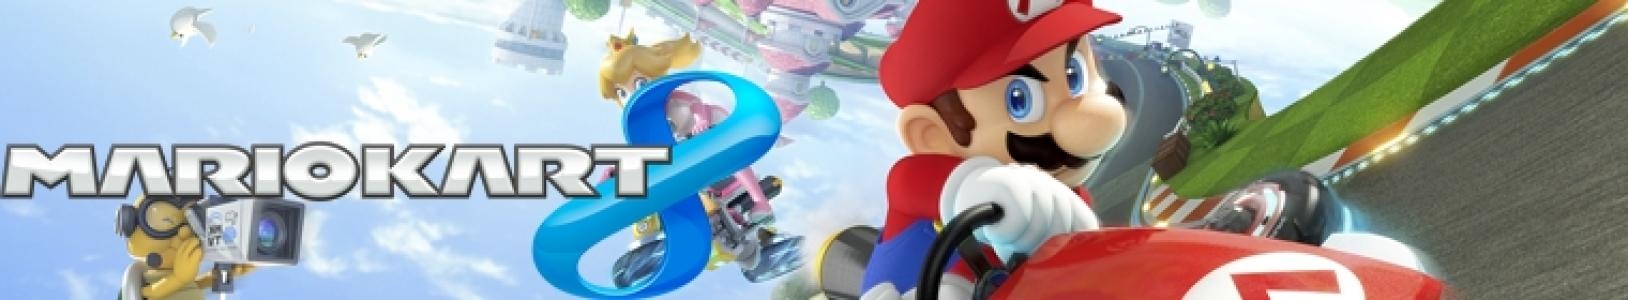 Mario Kart 8 [Steelbook Edition] banner